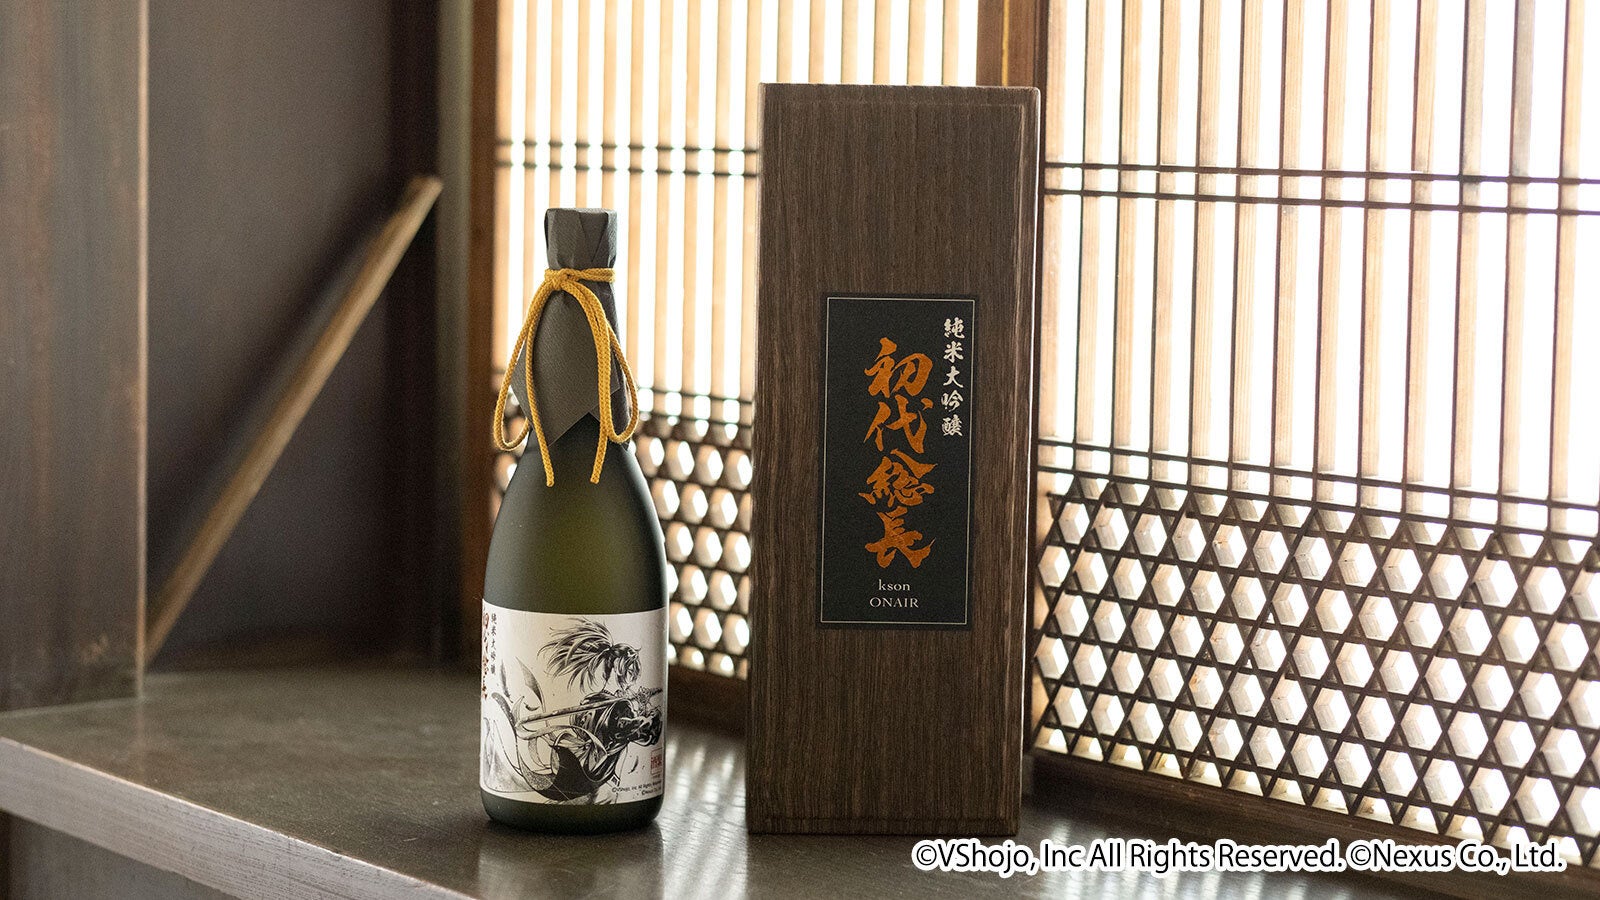 VTuber事務所「VShojo」所属 VTuberタレント「kson(ケイソン)」の日本酒、「純米大吟醸 初代総長」が発売決定!のサブ画像3